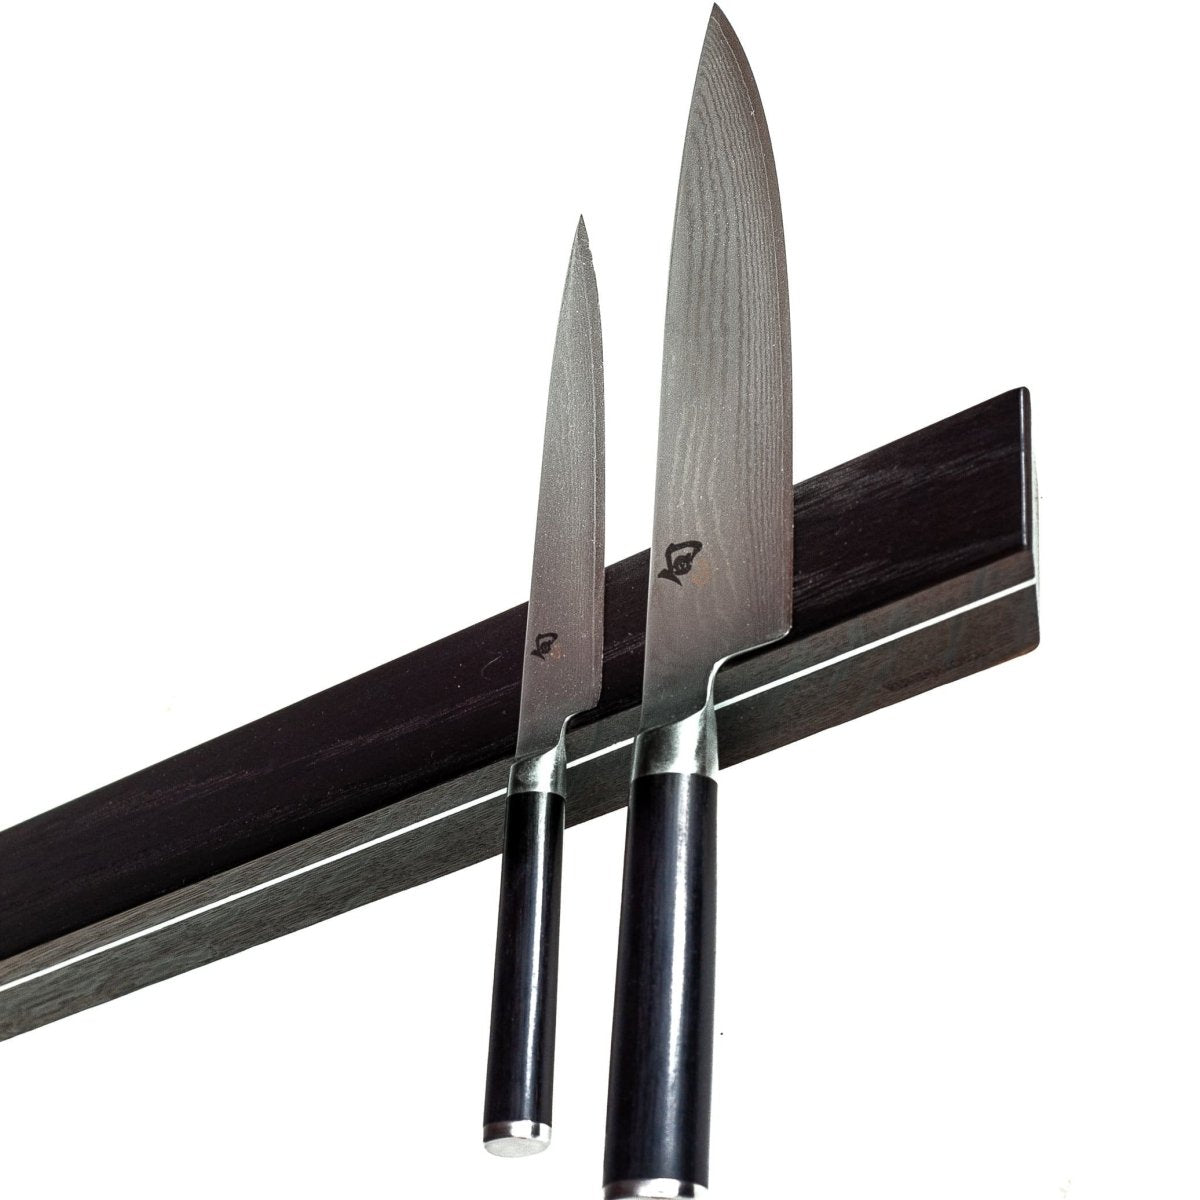 Rune-Jakobsen Woodworks 'Knifeboard Exclusive' dyb knivmagnet_1 by Rune-Jakobsen Design